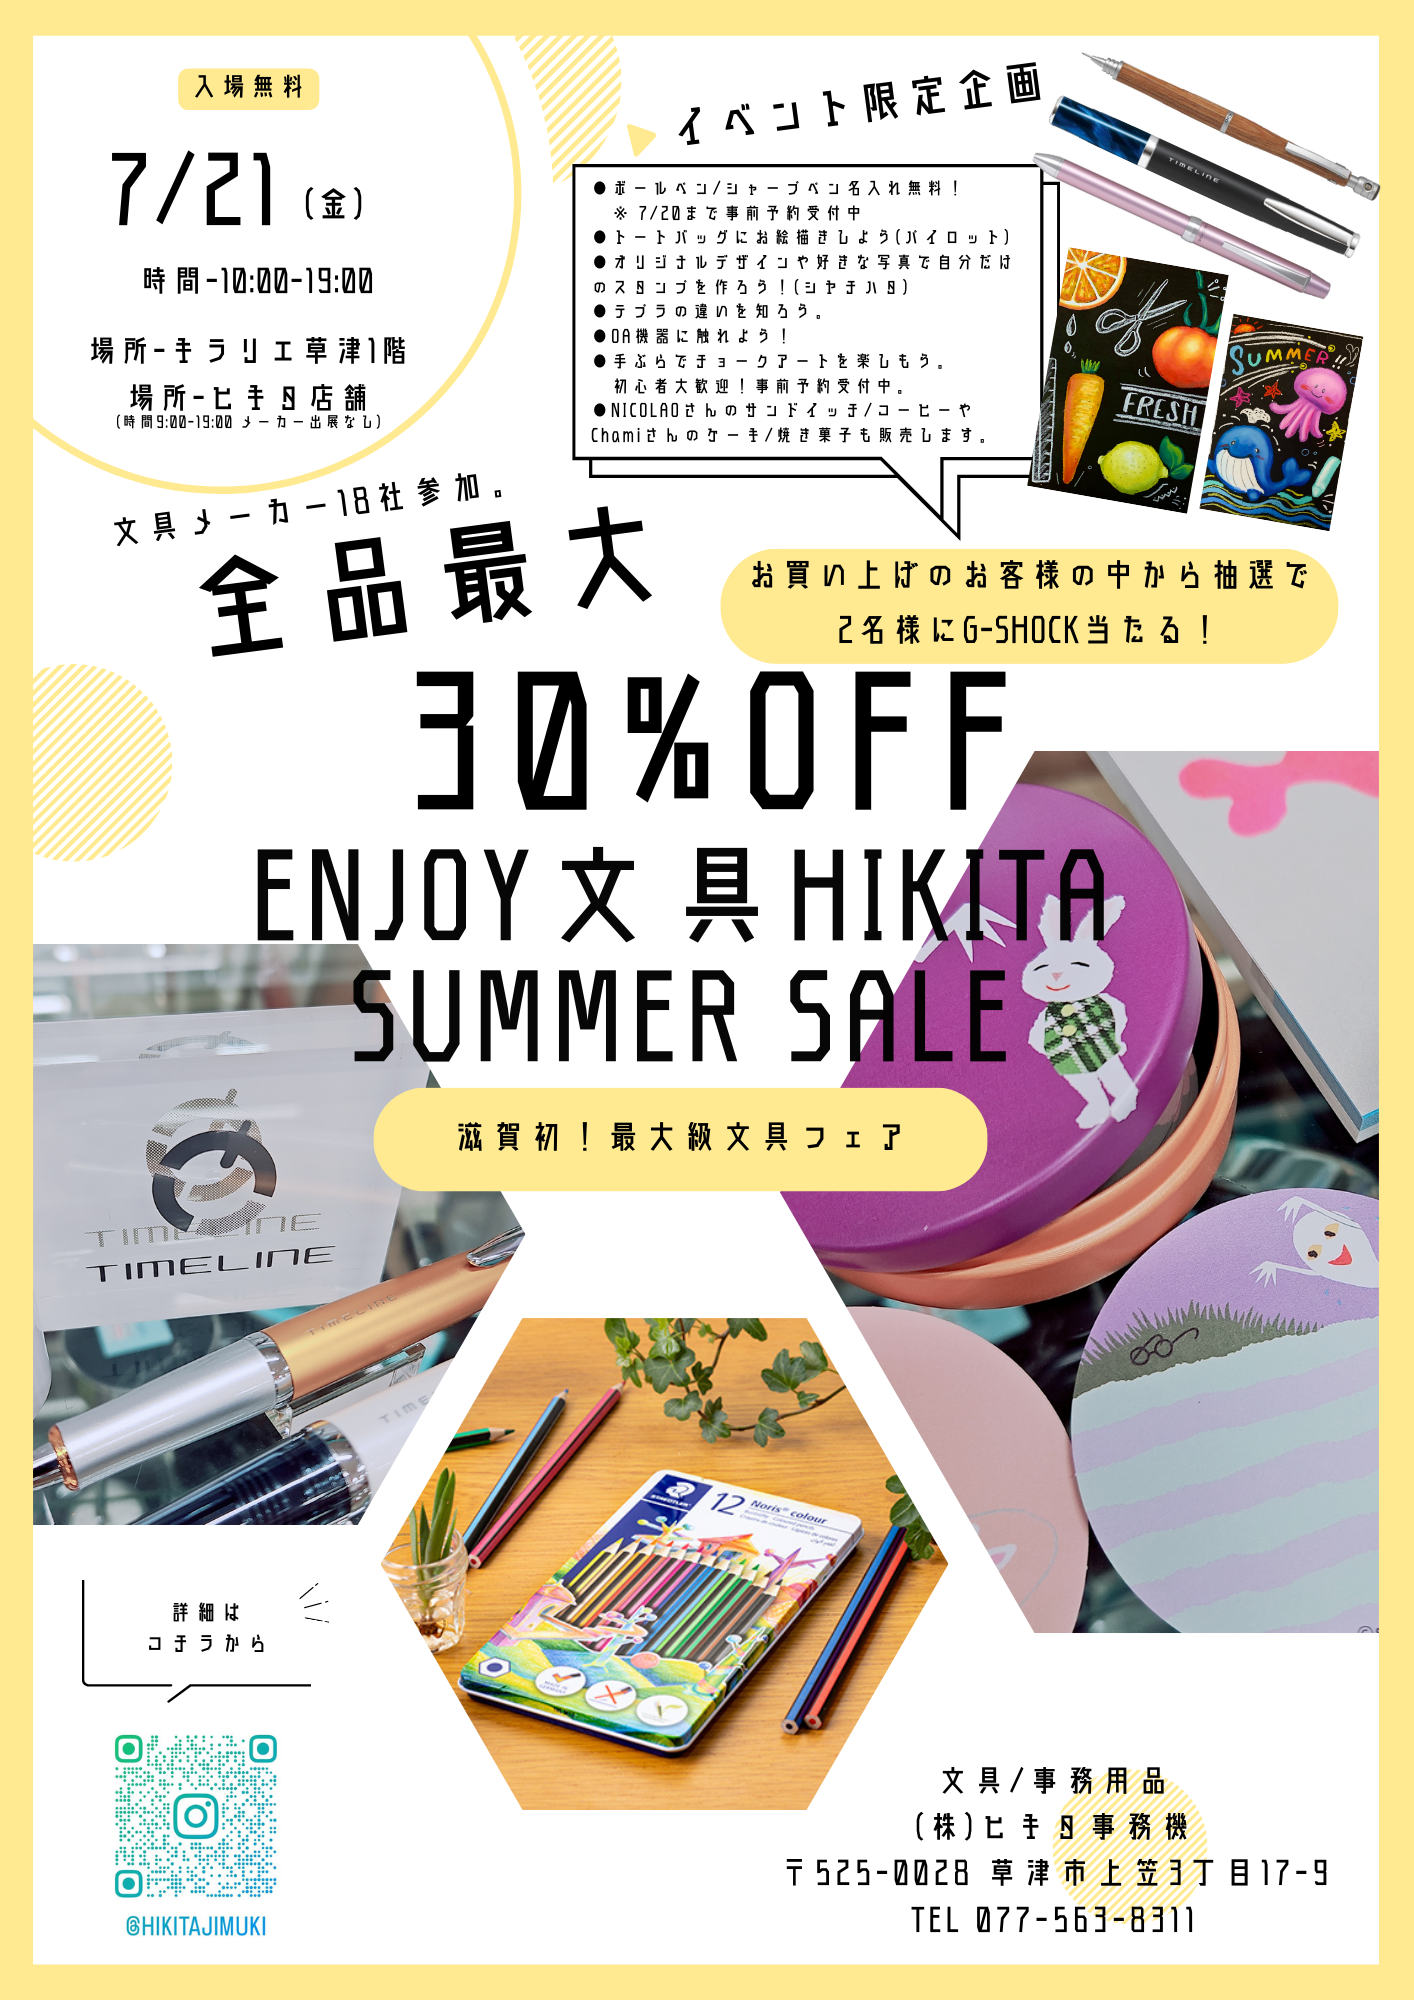 【イベント情報@滋賀】enjoy 文具 HIKITA summer sale